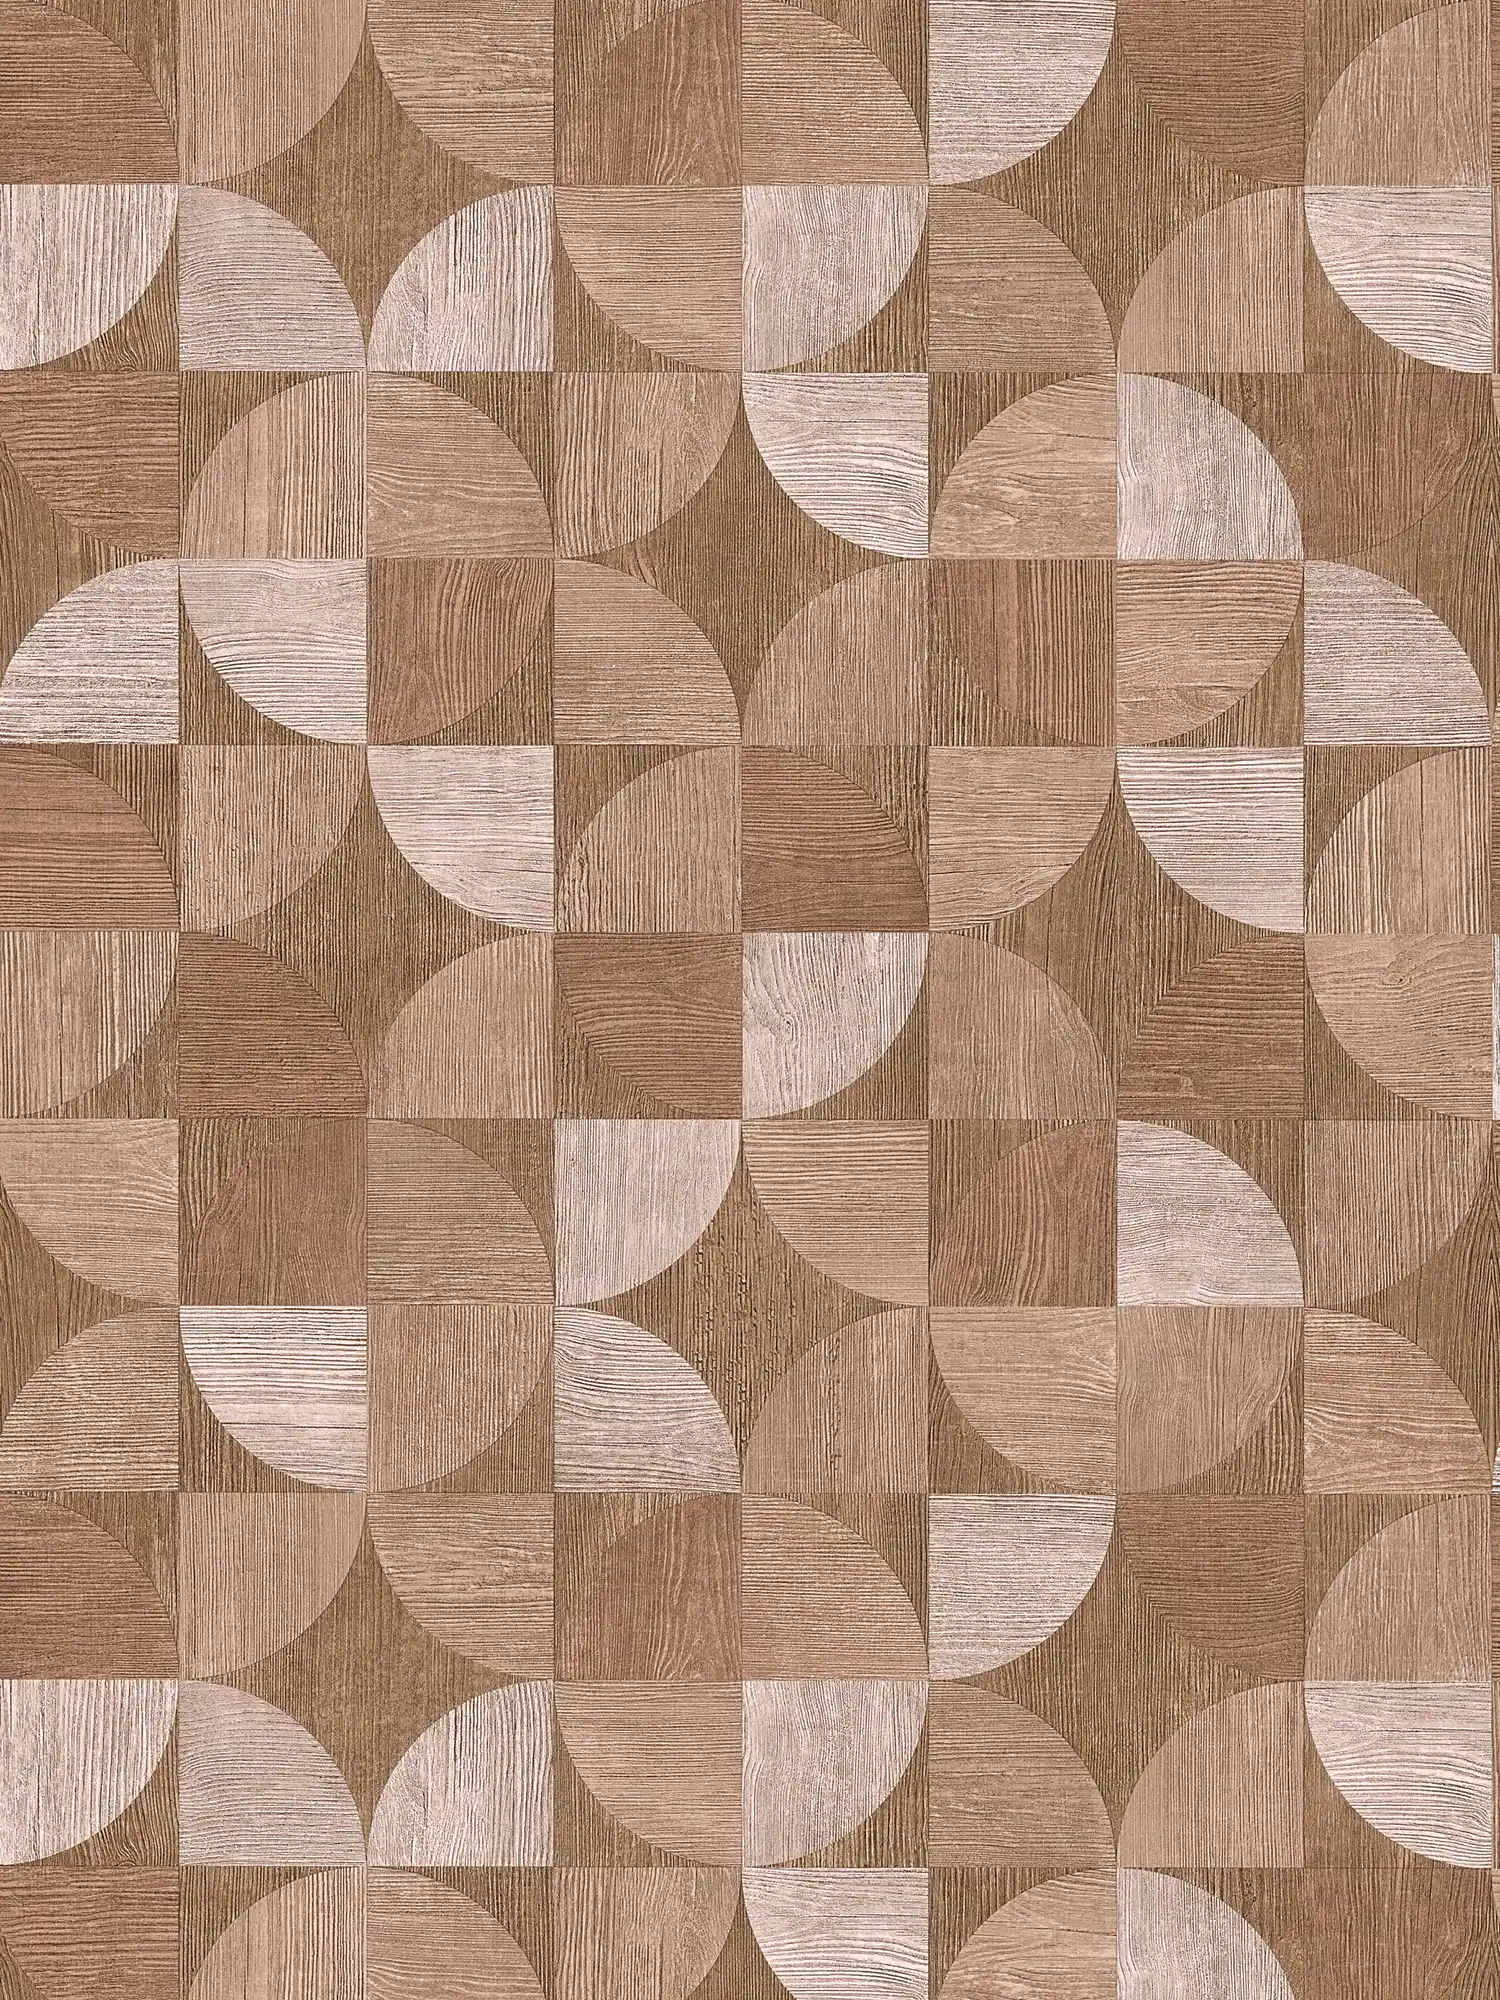 Behang met grafisch patroon in houtlook - bruin, beige
